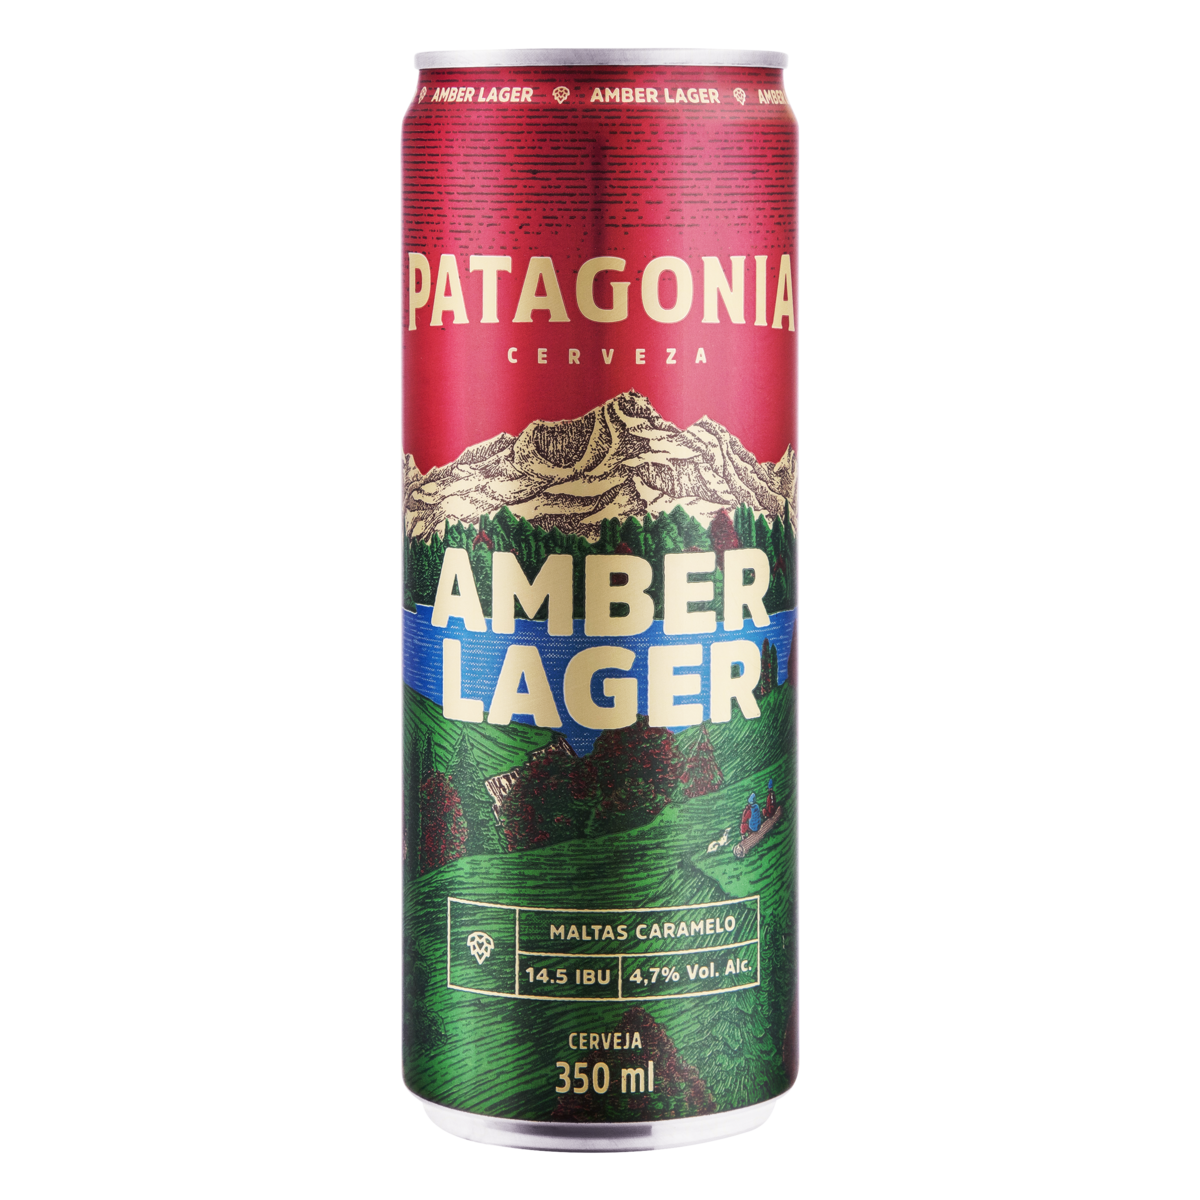 Cerveja Amber Lager Nacional Patagonia Lata Sleek 350ml